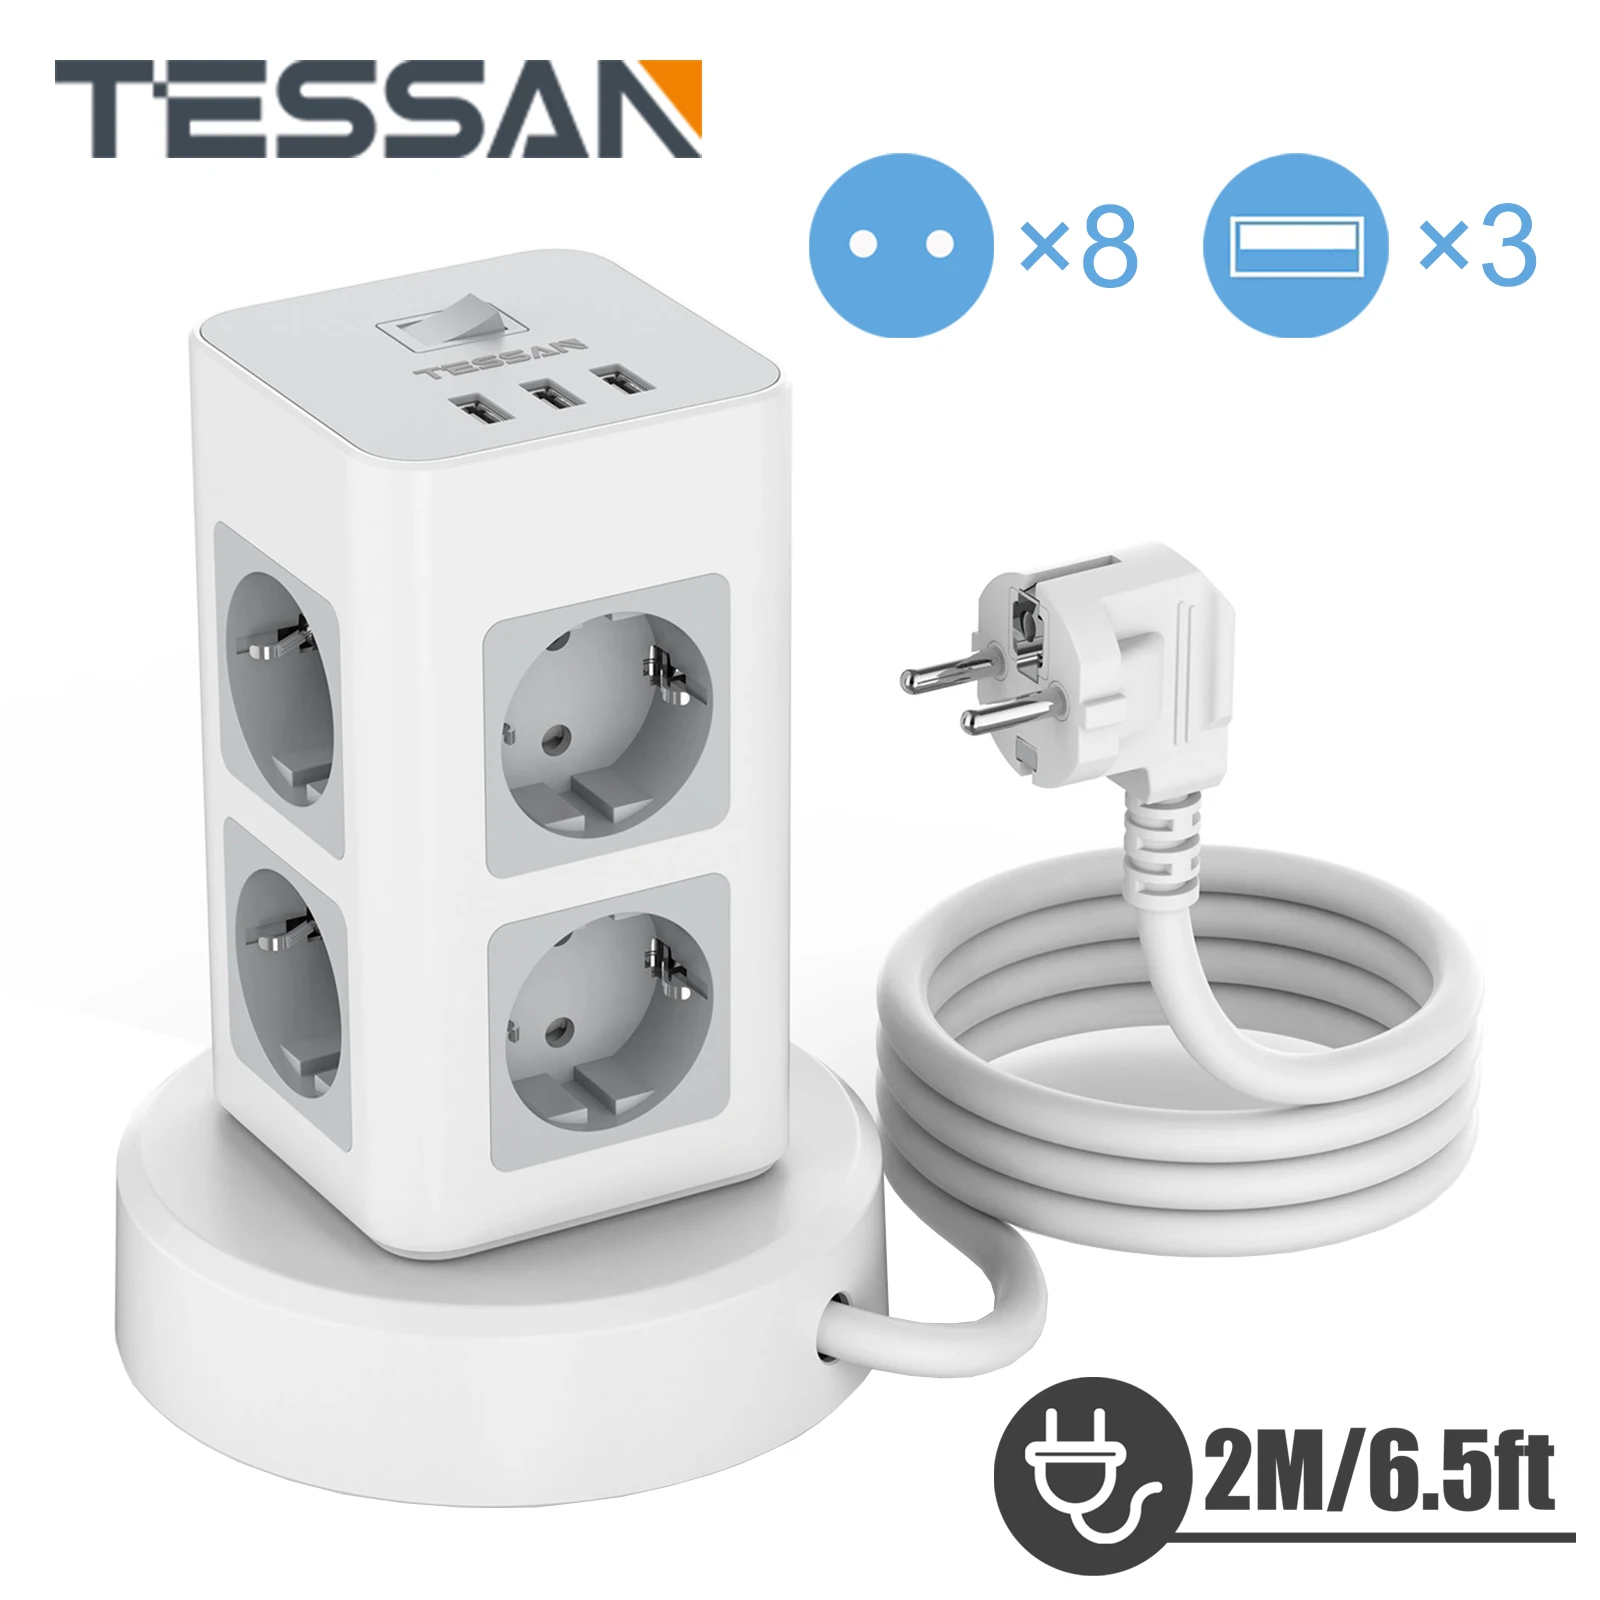 

Сетевой фильтр TESSAN с несколькими розетками, 3/8 розеток переменного тока и 3 USB-порта, европейская стандартная розетка